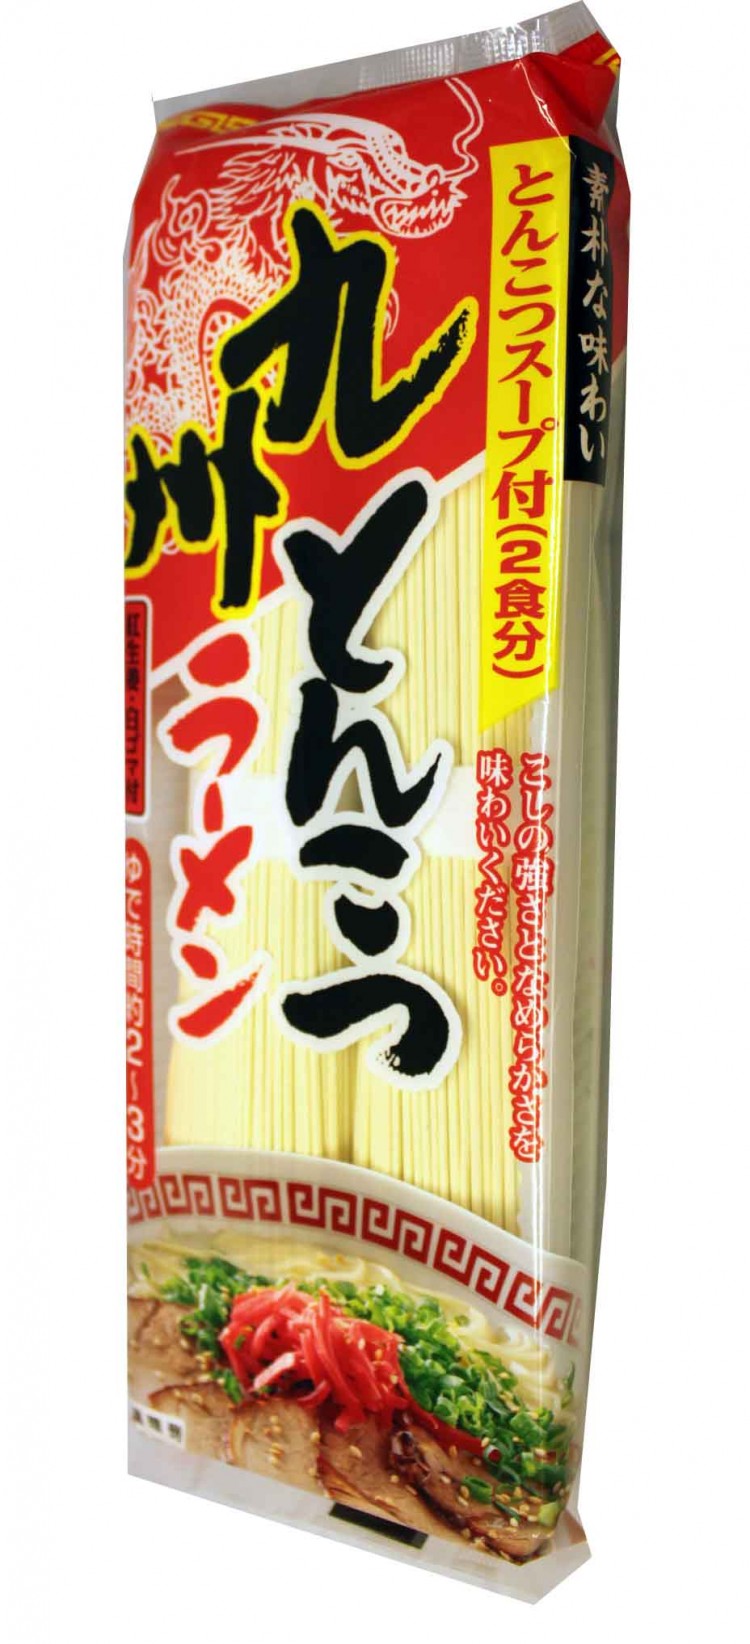 Японская пшеничная. Лапша рамен упаковка 2кг. Sunaoshi лапша. Японская пшеничная лапша. Японский рамен в упаковке.